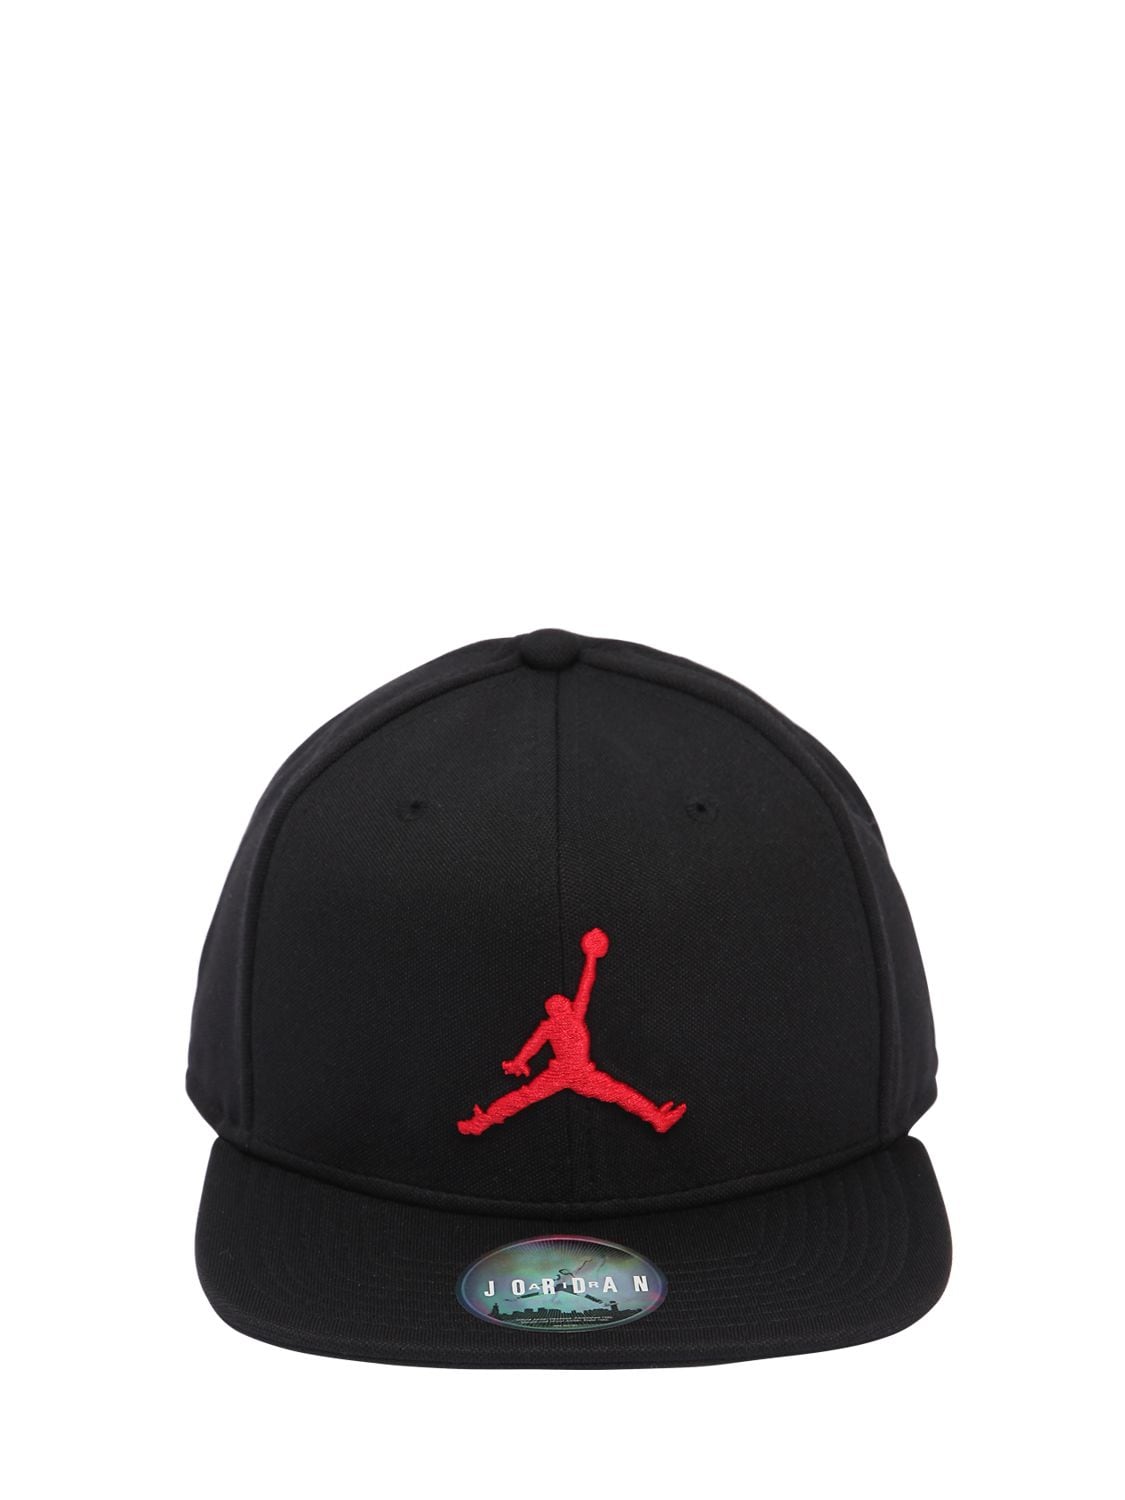 Nike Air Jordan Jumpman Hat In Black